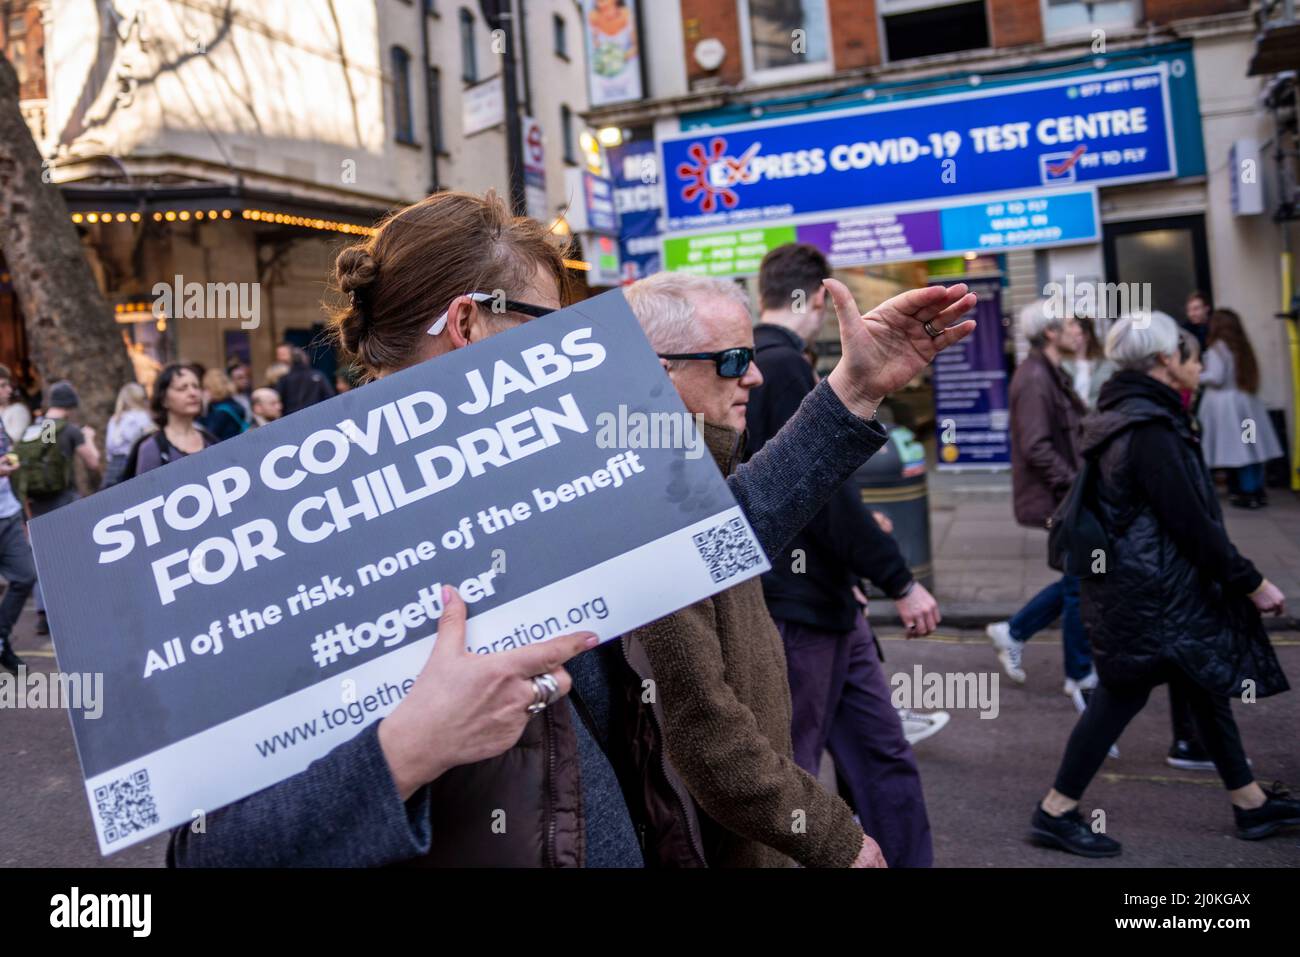 Manifestation contre la vaccination des enfants contre Covid 19, rejointe par des anti-vaxxers. Stop covid jabs for Children étiquette, passage au centre d'essai Banque D'Images